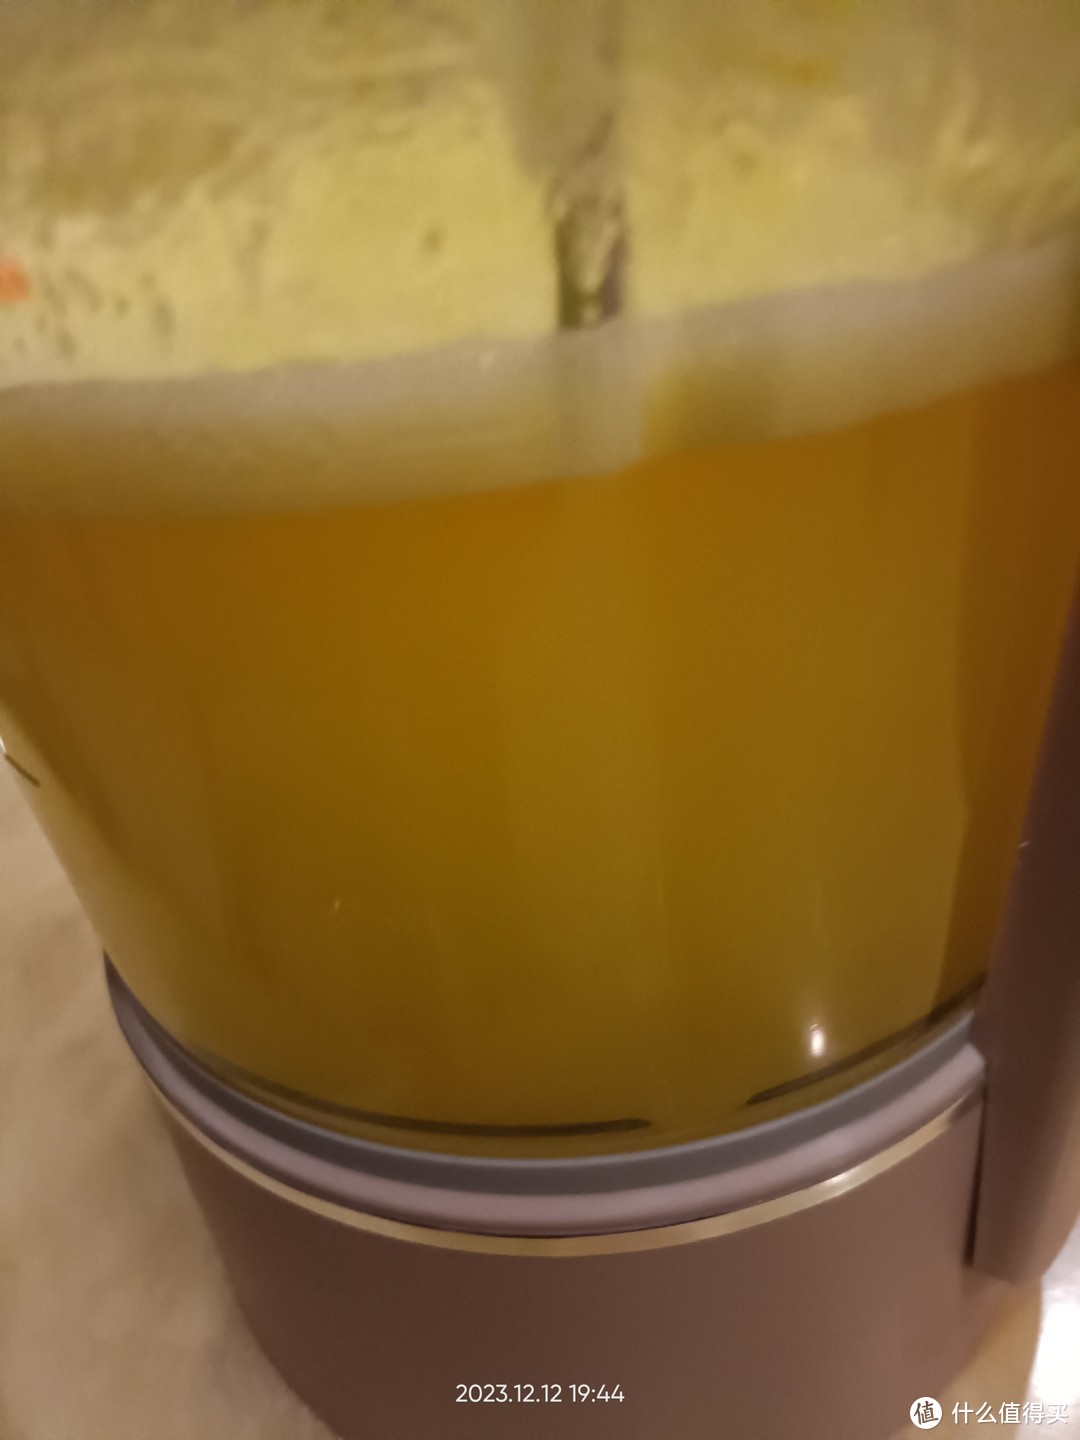 这是刚开始测试榨的橙子皮汁水，很细腻，很香，上面的泡沫百度是说转速快所以搅打过程混入空气造成的